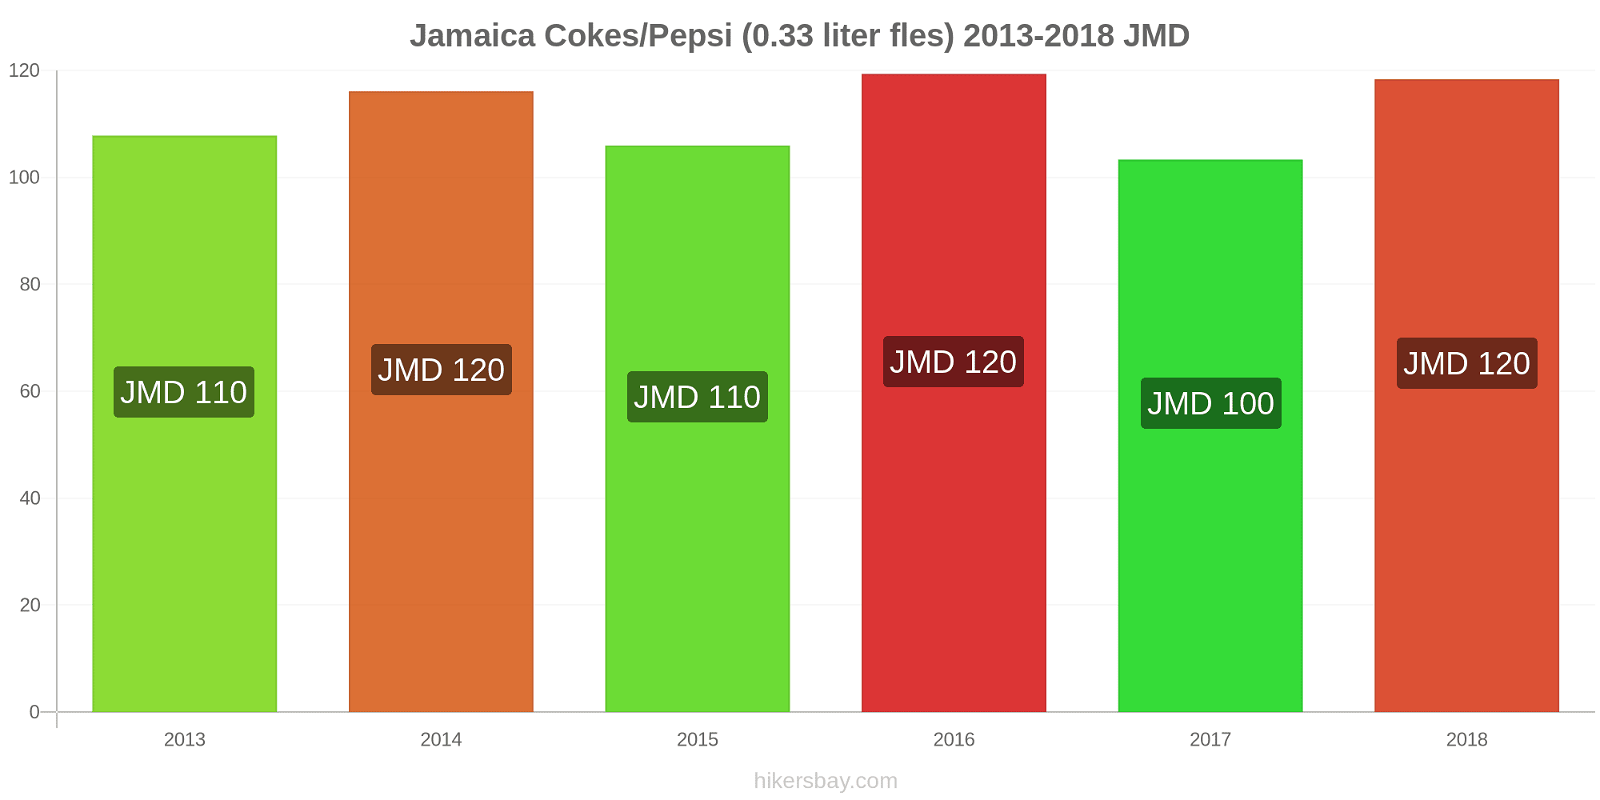 Jamaica prijswijzigingen Coca-Cola/Pepsi (0.33 liter fles) hikersbay.com